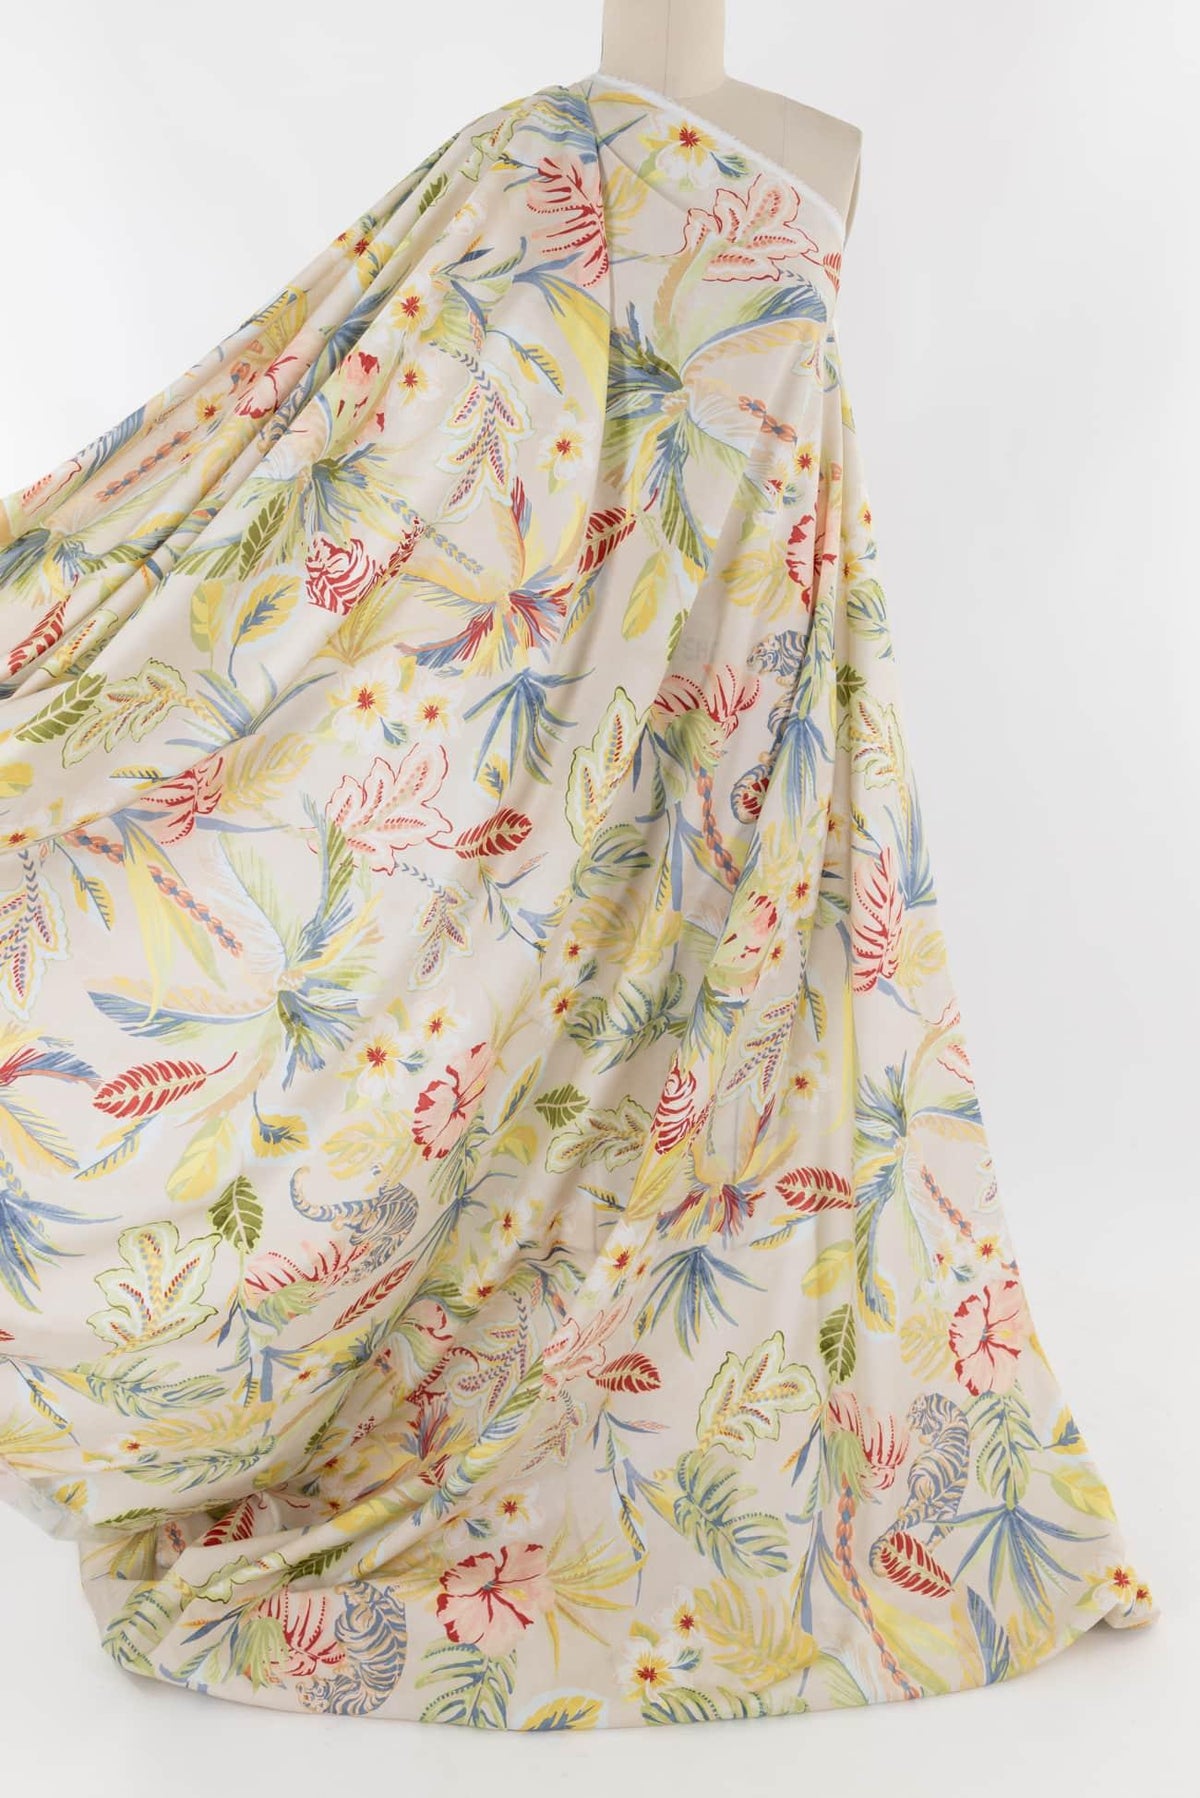 Mendocino Garden Italian Cotton Woven - Marcy Tilton Fabrics